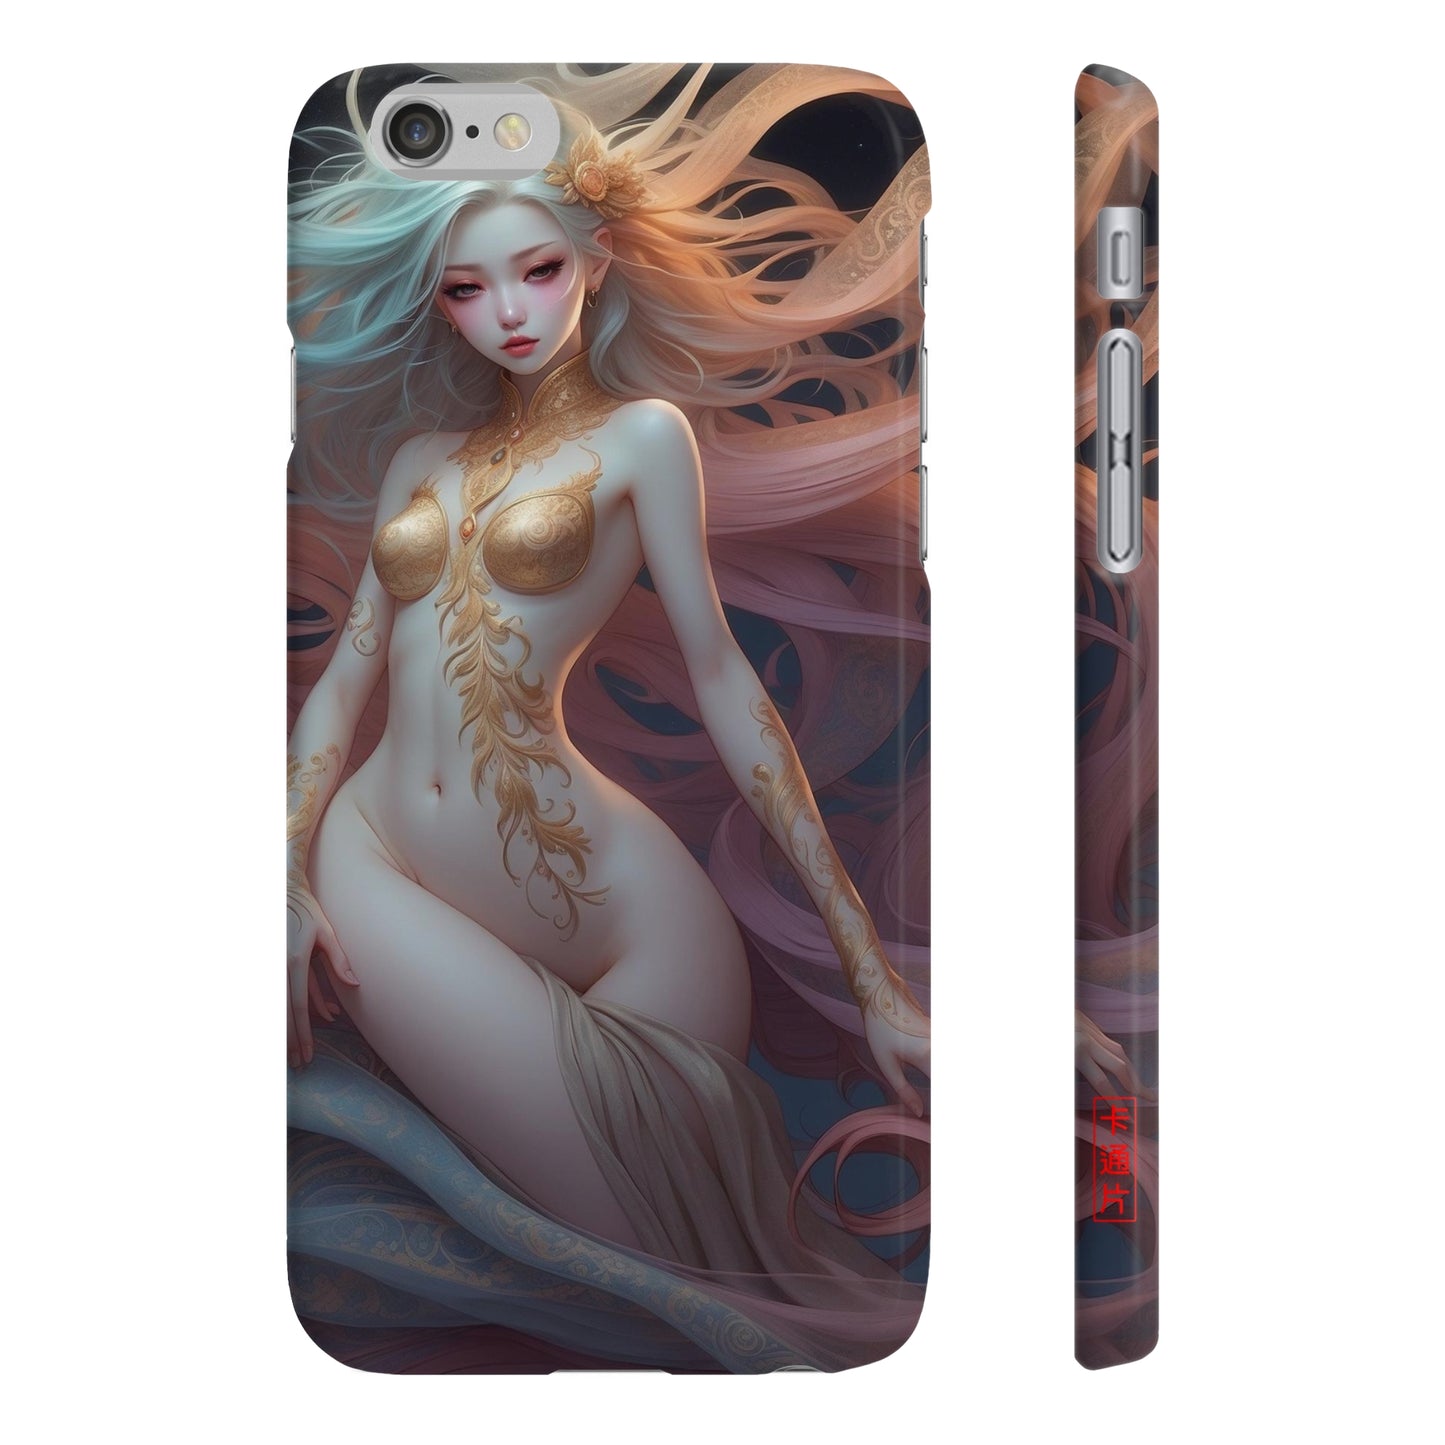 Kǎtōng Piàn - Mermaid Collection - 008 - Slim Phone Cases Printify